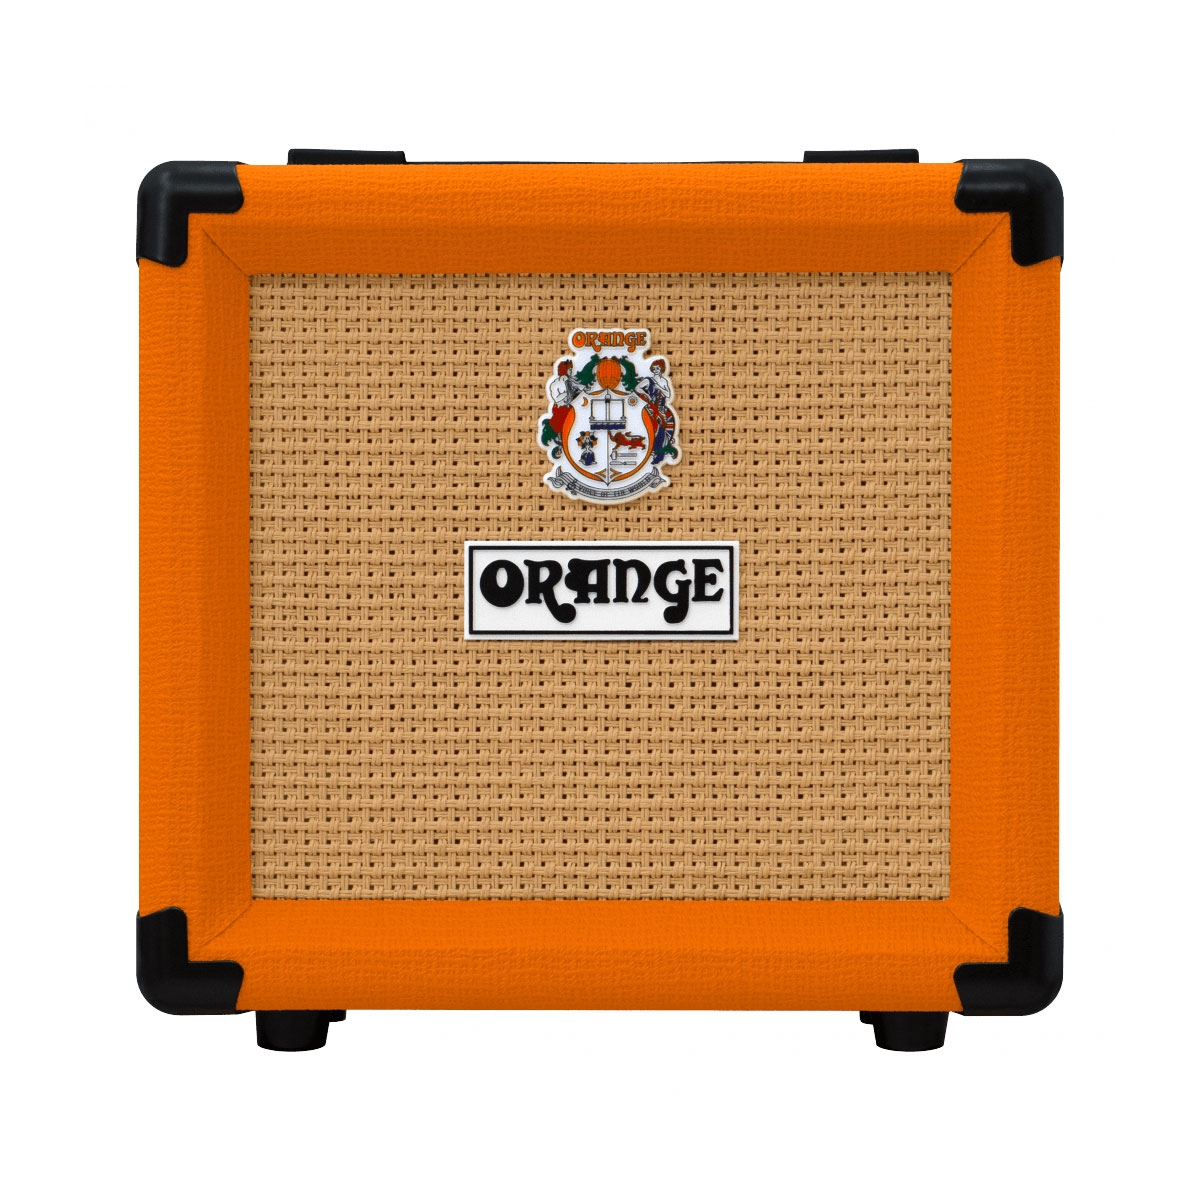 Fender The Pinwheel Rotary Speaker Emulator Pédale effet guitare